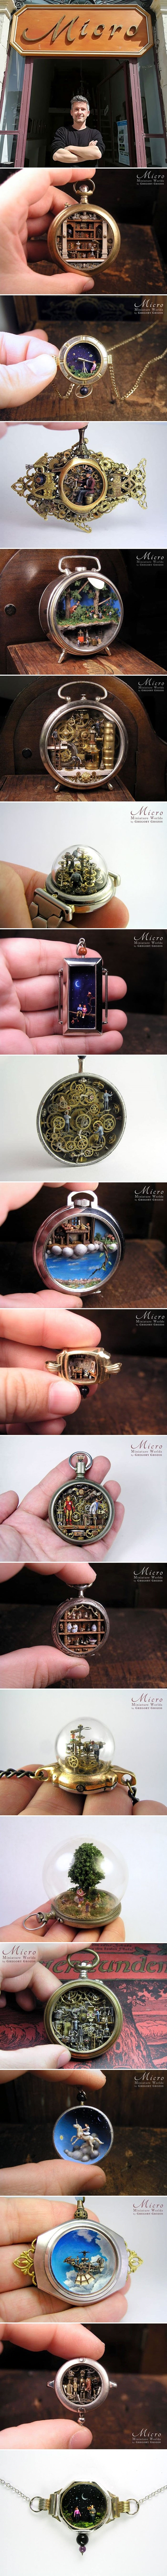 Ovaj umjetnik pretvara ručne i džepne satove u minijaturne svjetove, rezultat je fascinantan